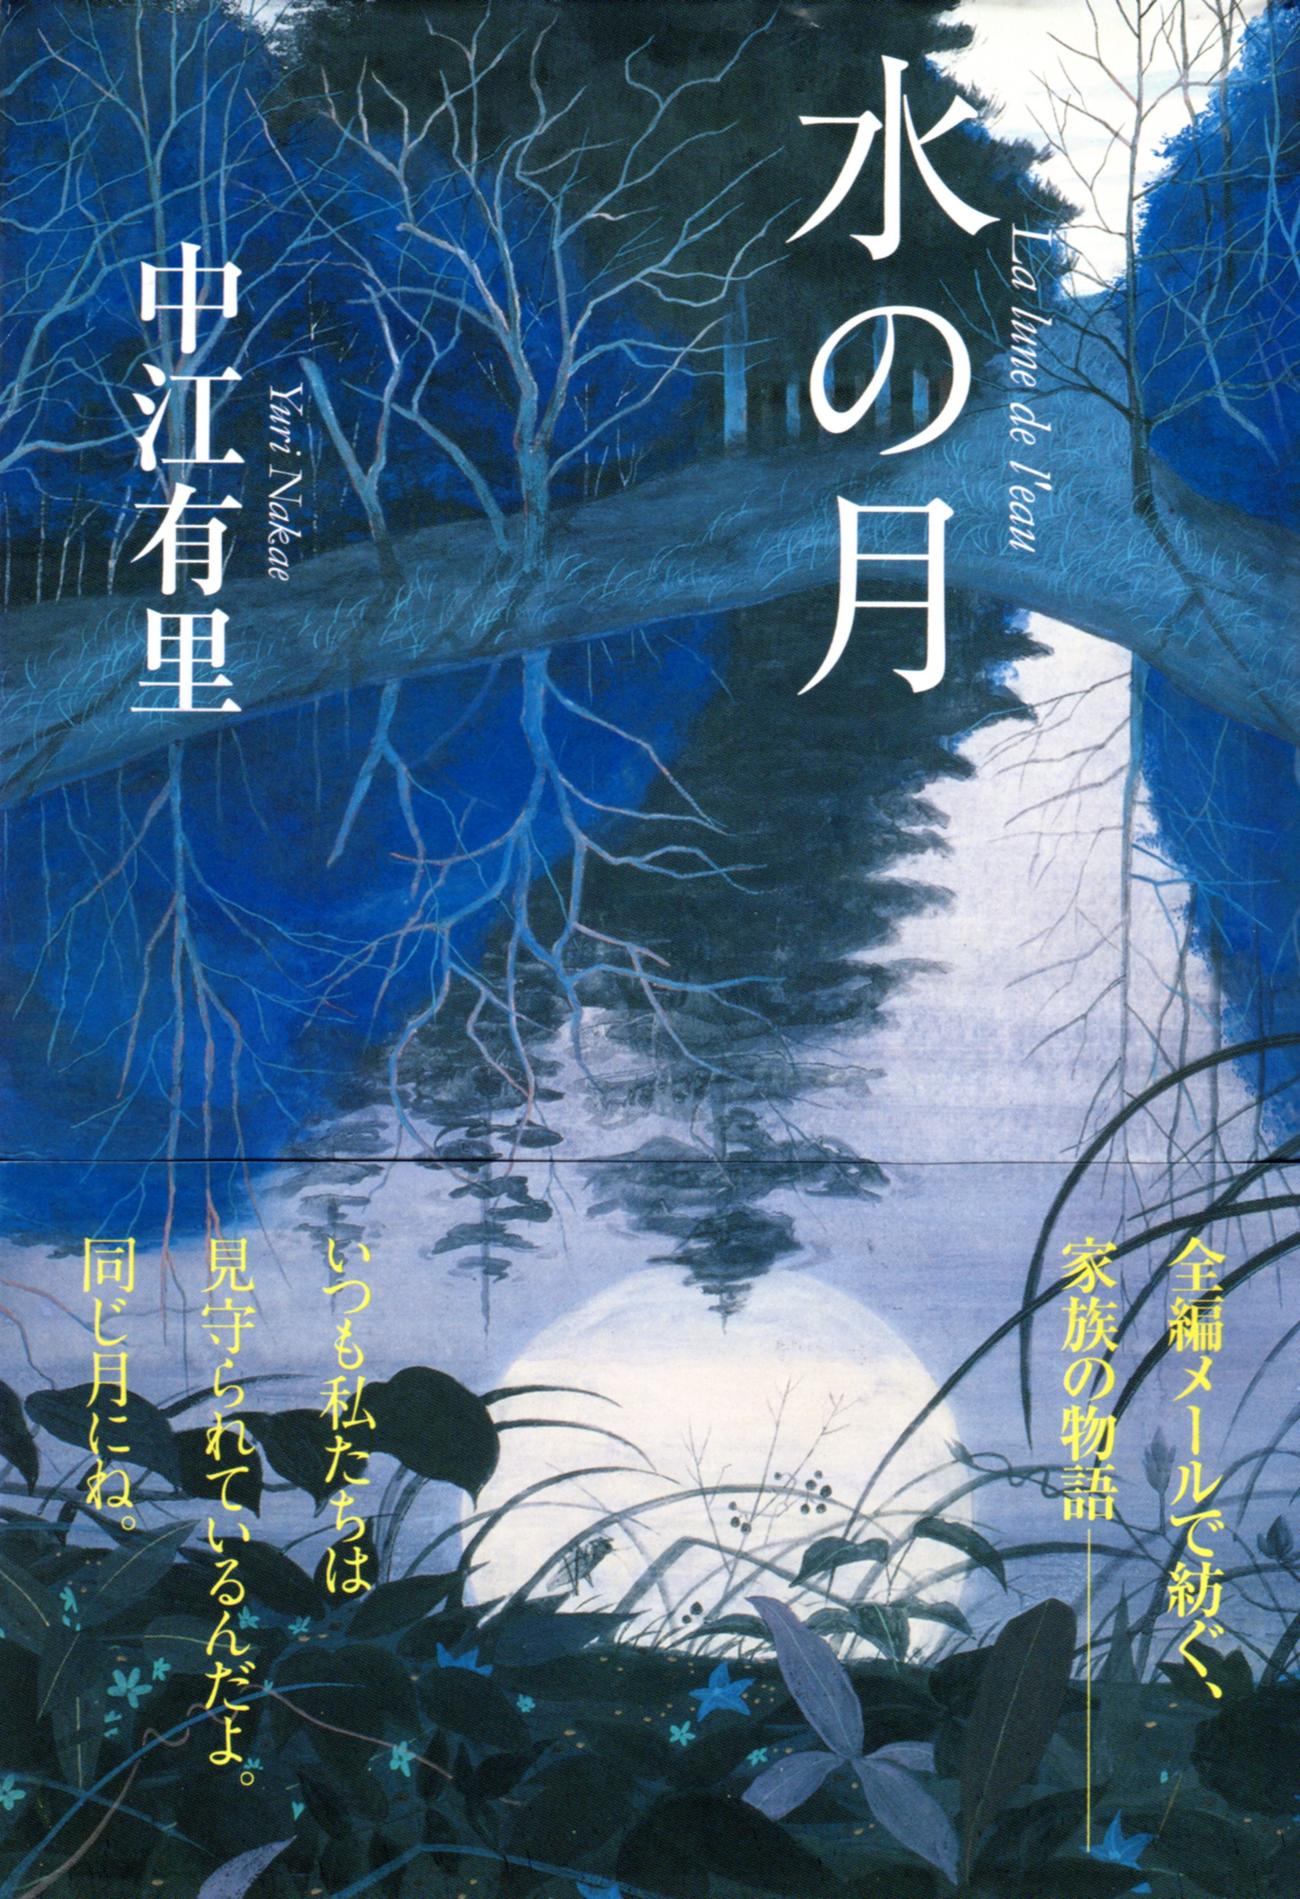 中江有里の小説「水の月」